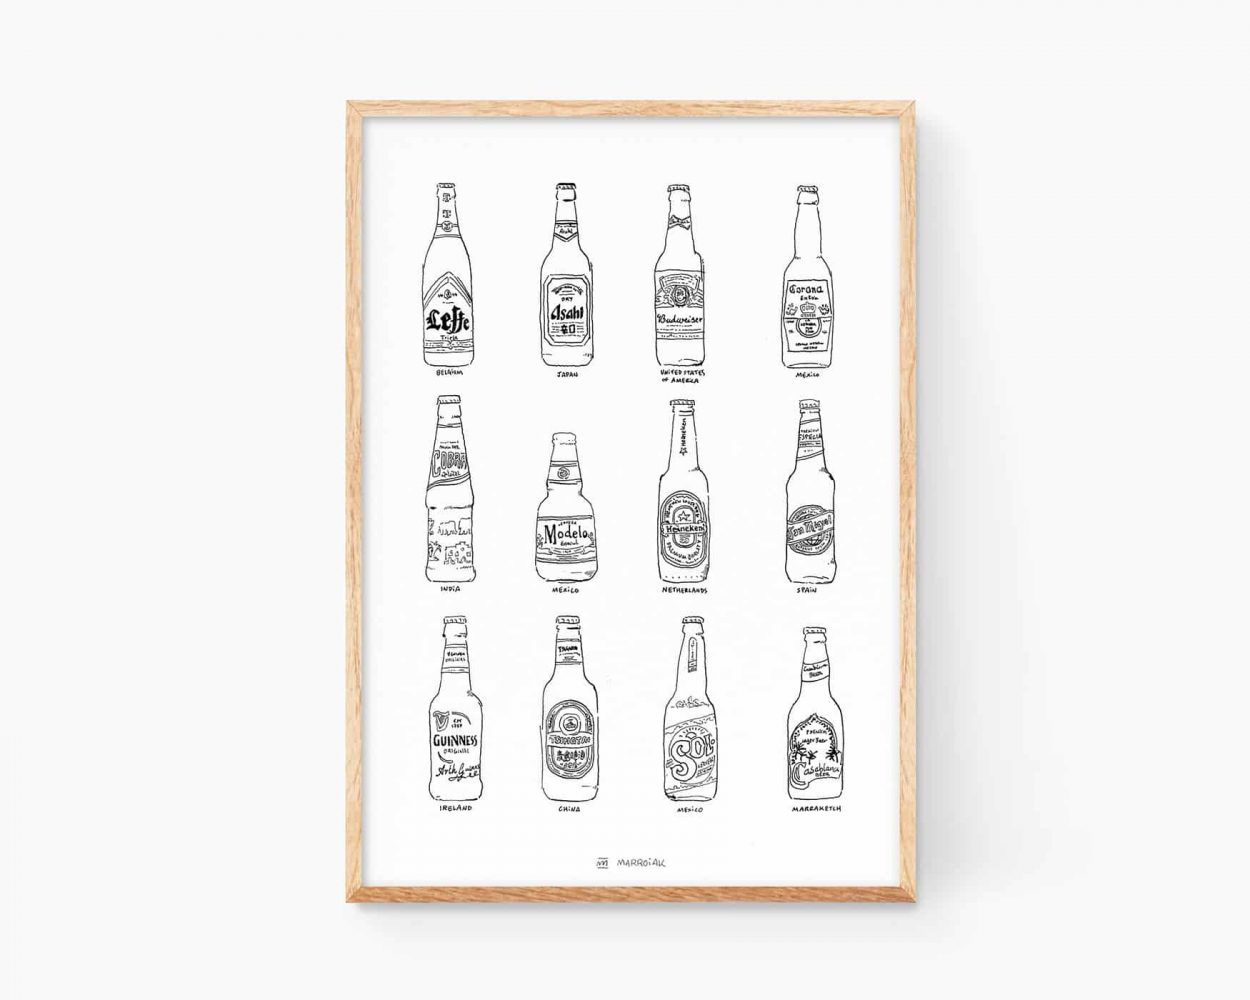 Lámina decorativa para cocinas con una ilustración de diferentes cervezas del mundo. Cobra, Heineken, tsingtao, coronita, san miguel, leffe, cobra, casa blanca, guiness